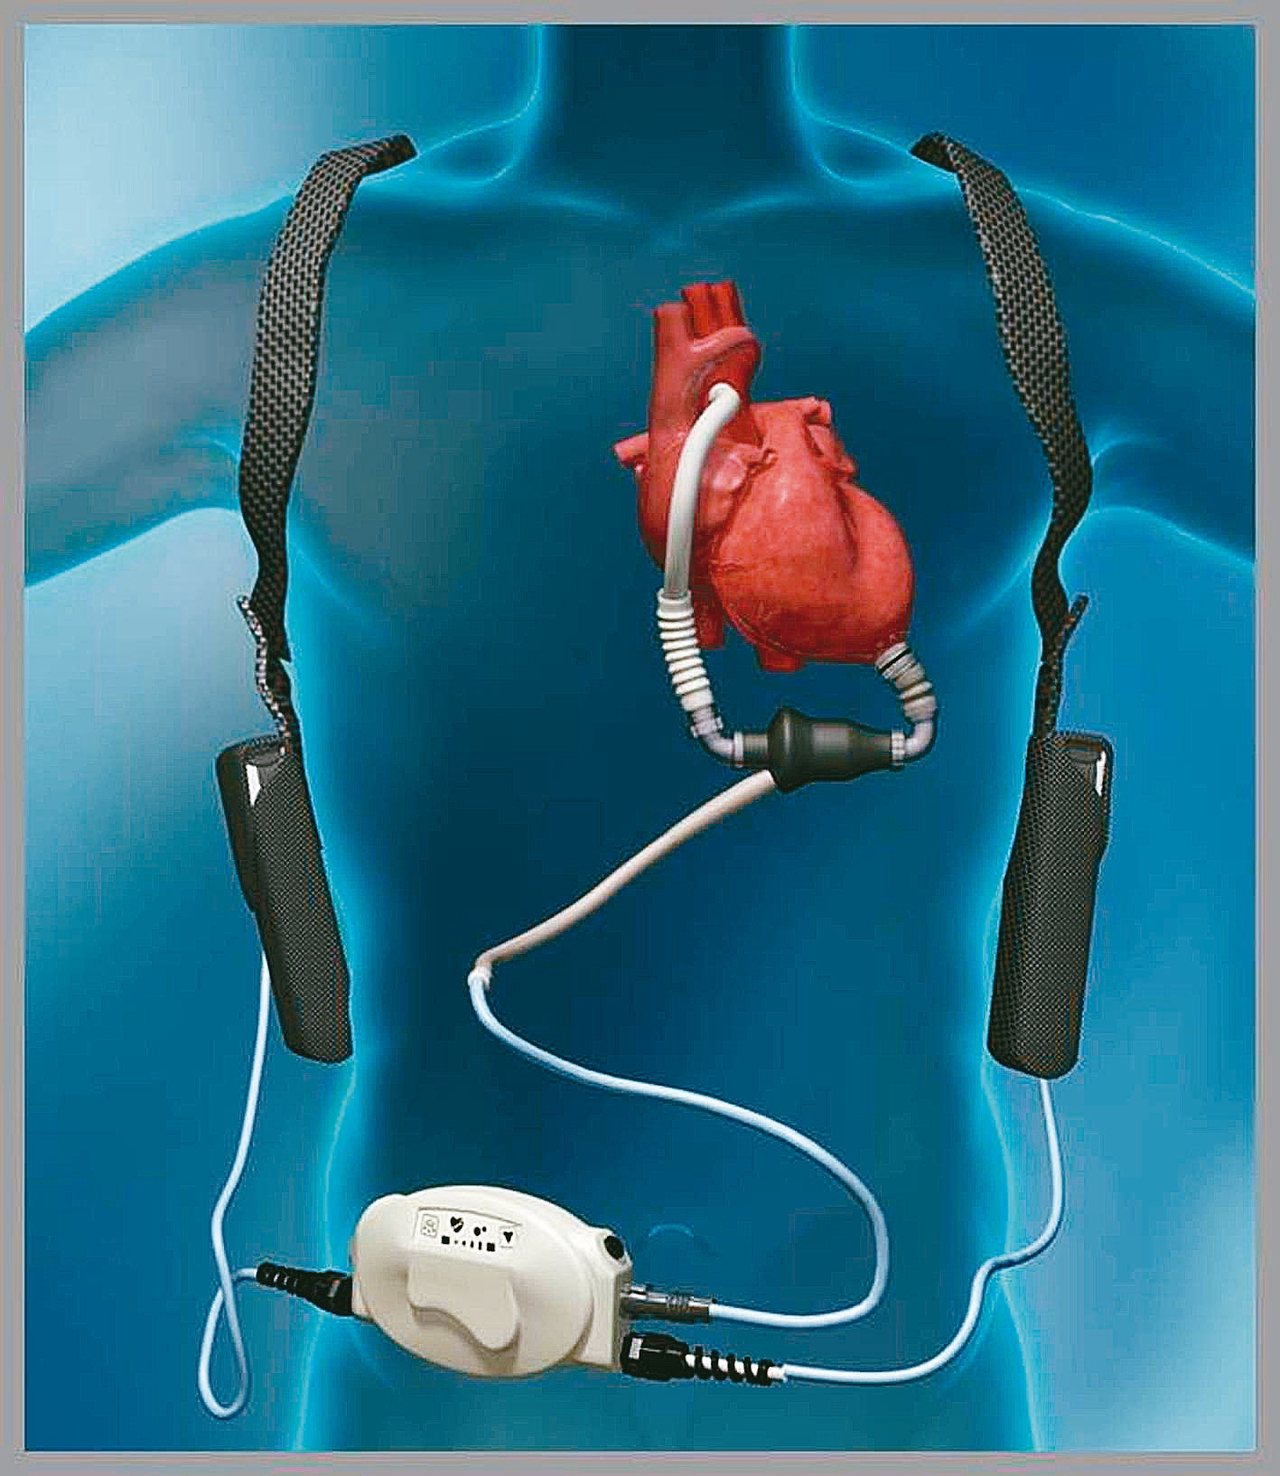 心室輔助器（圖）具有幫浦功能，可幫助心臟運作，左為心室輔助器連接示意圖。